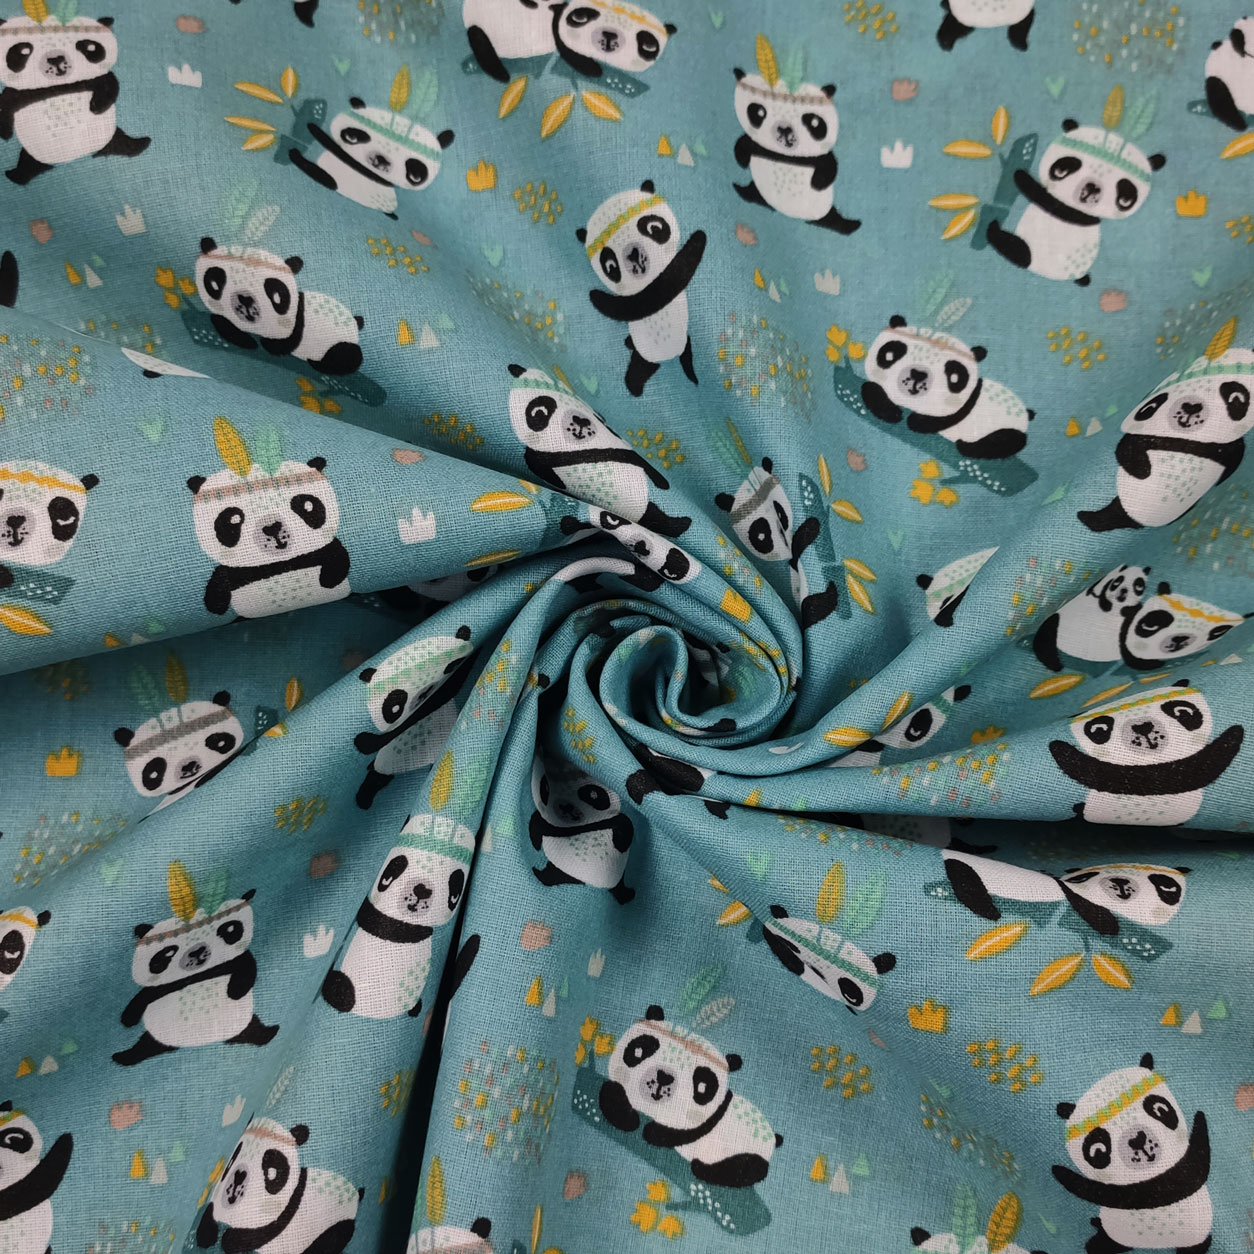 tessuto-panda-sfondo-azzurro